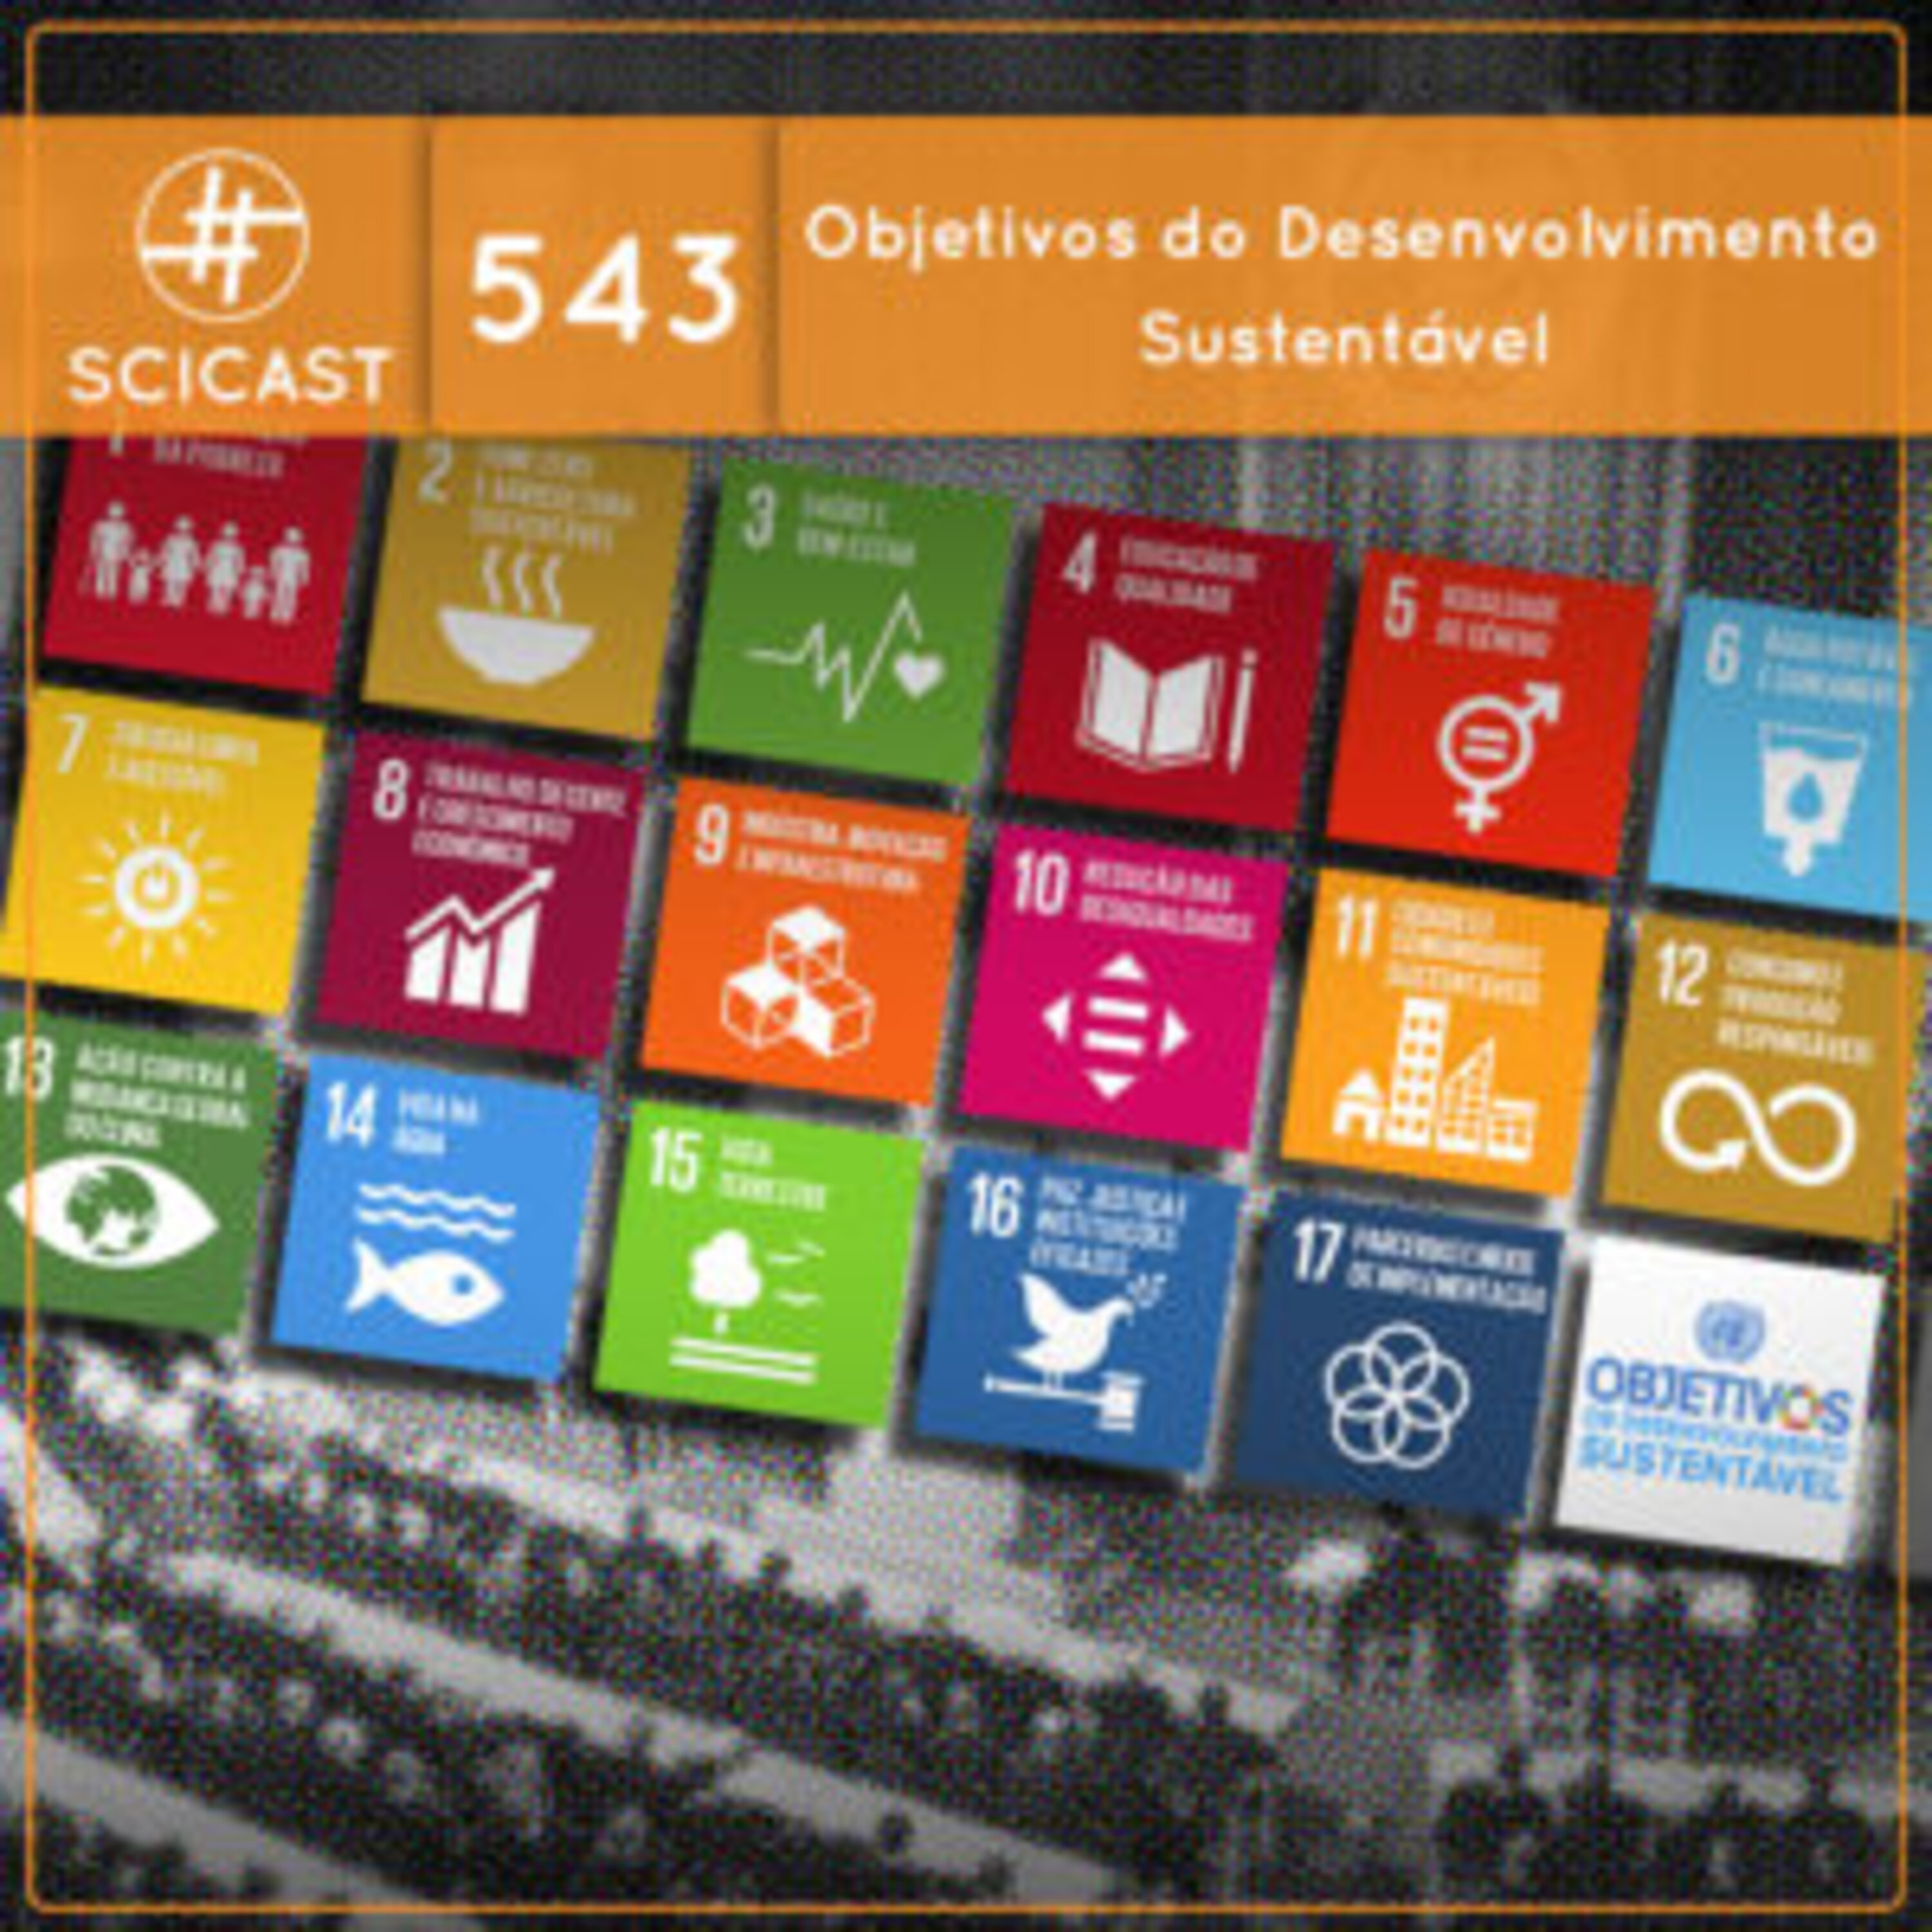 ODS: Objetivos de Desenvolvimento Sustentável (SciCast #543)